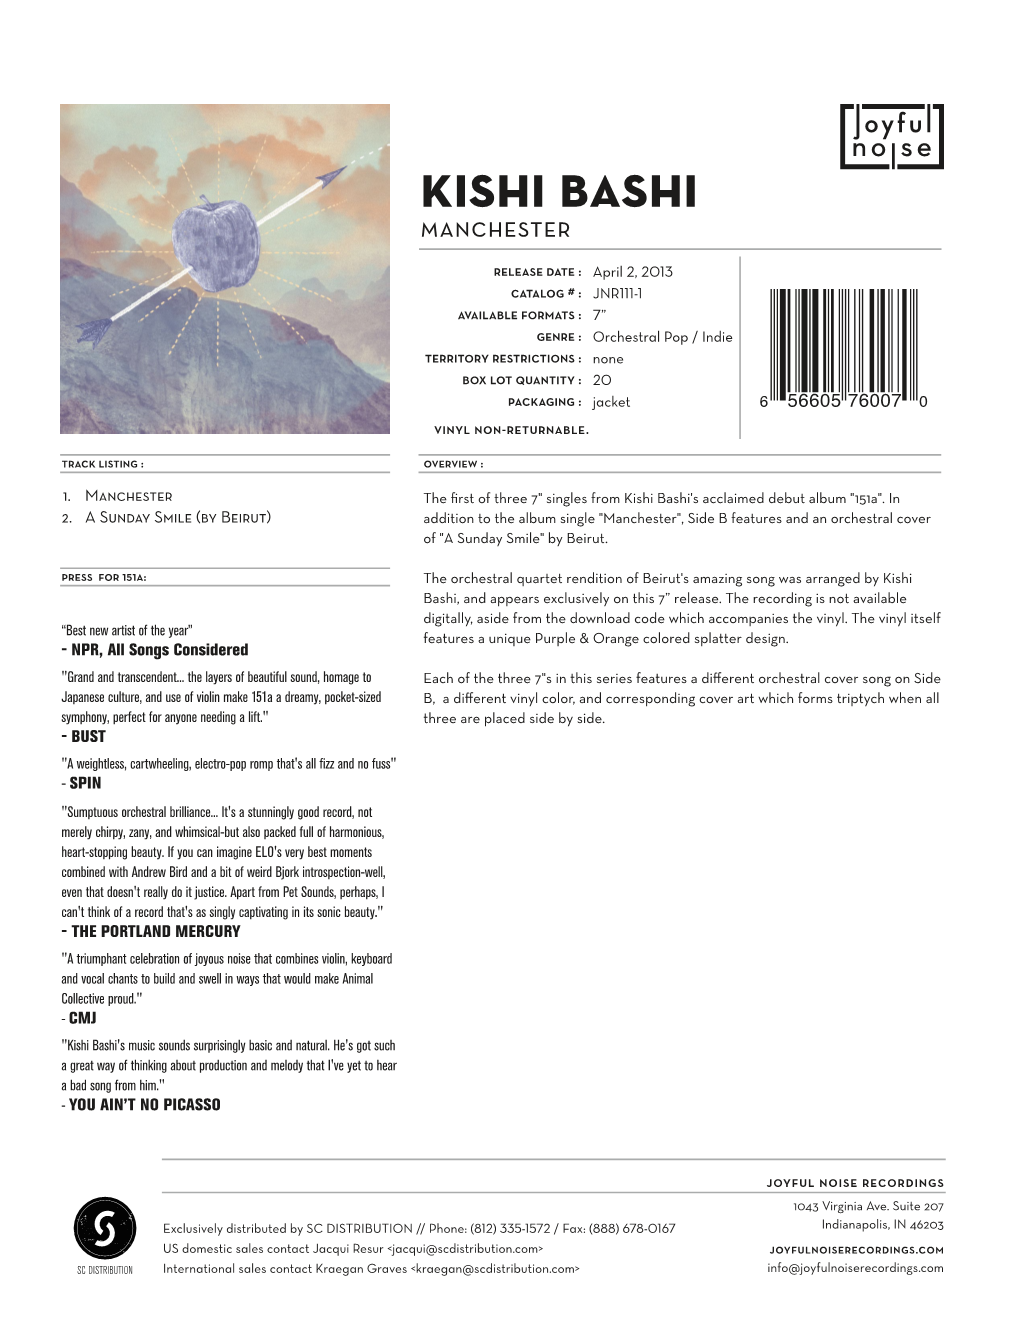 Kishi Bashi Manchester